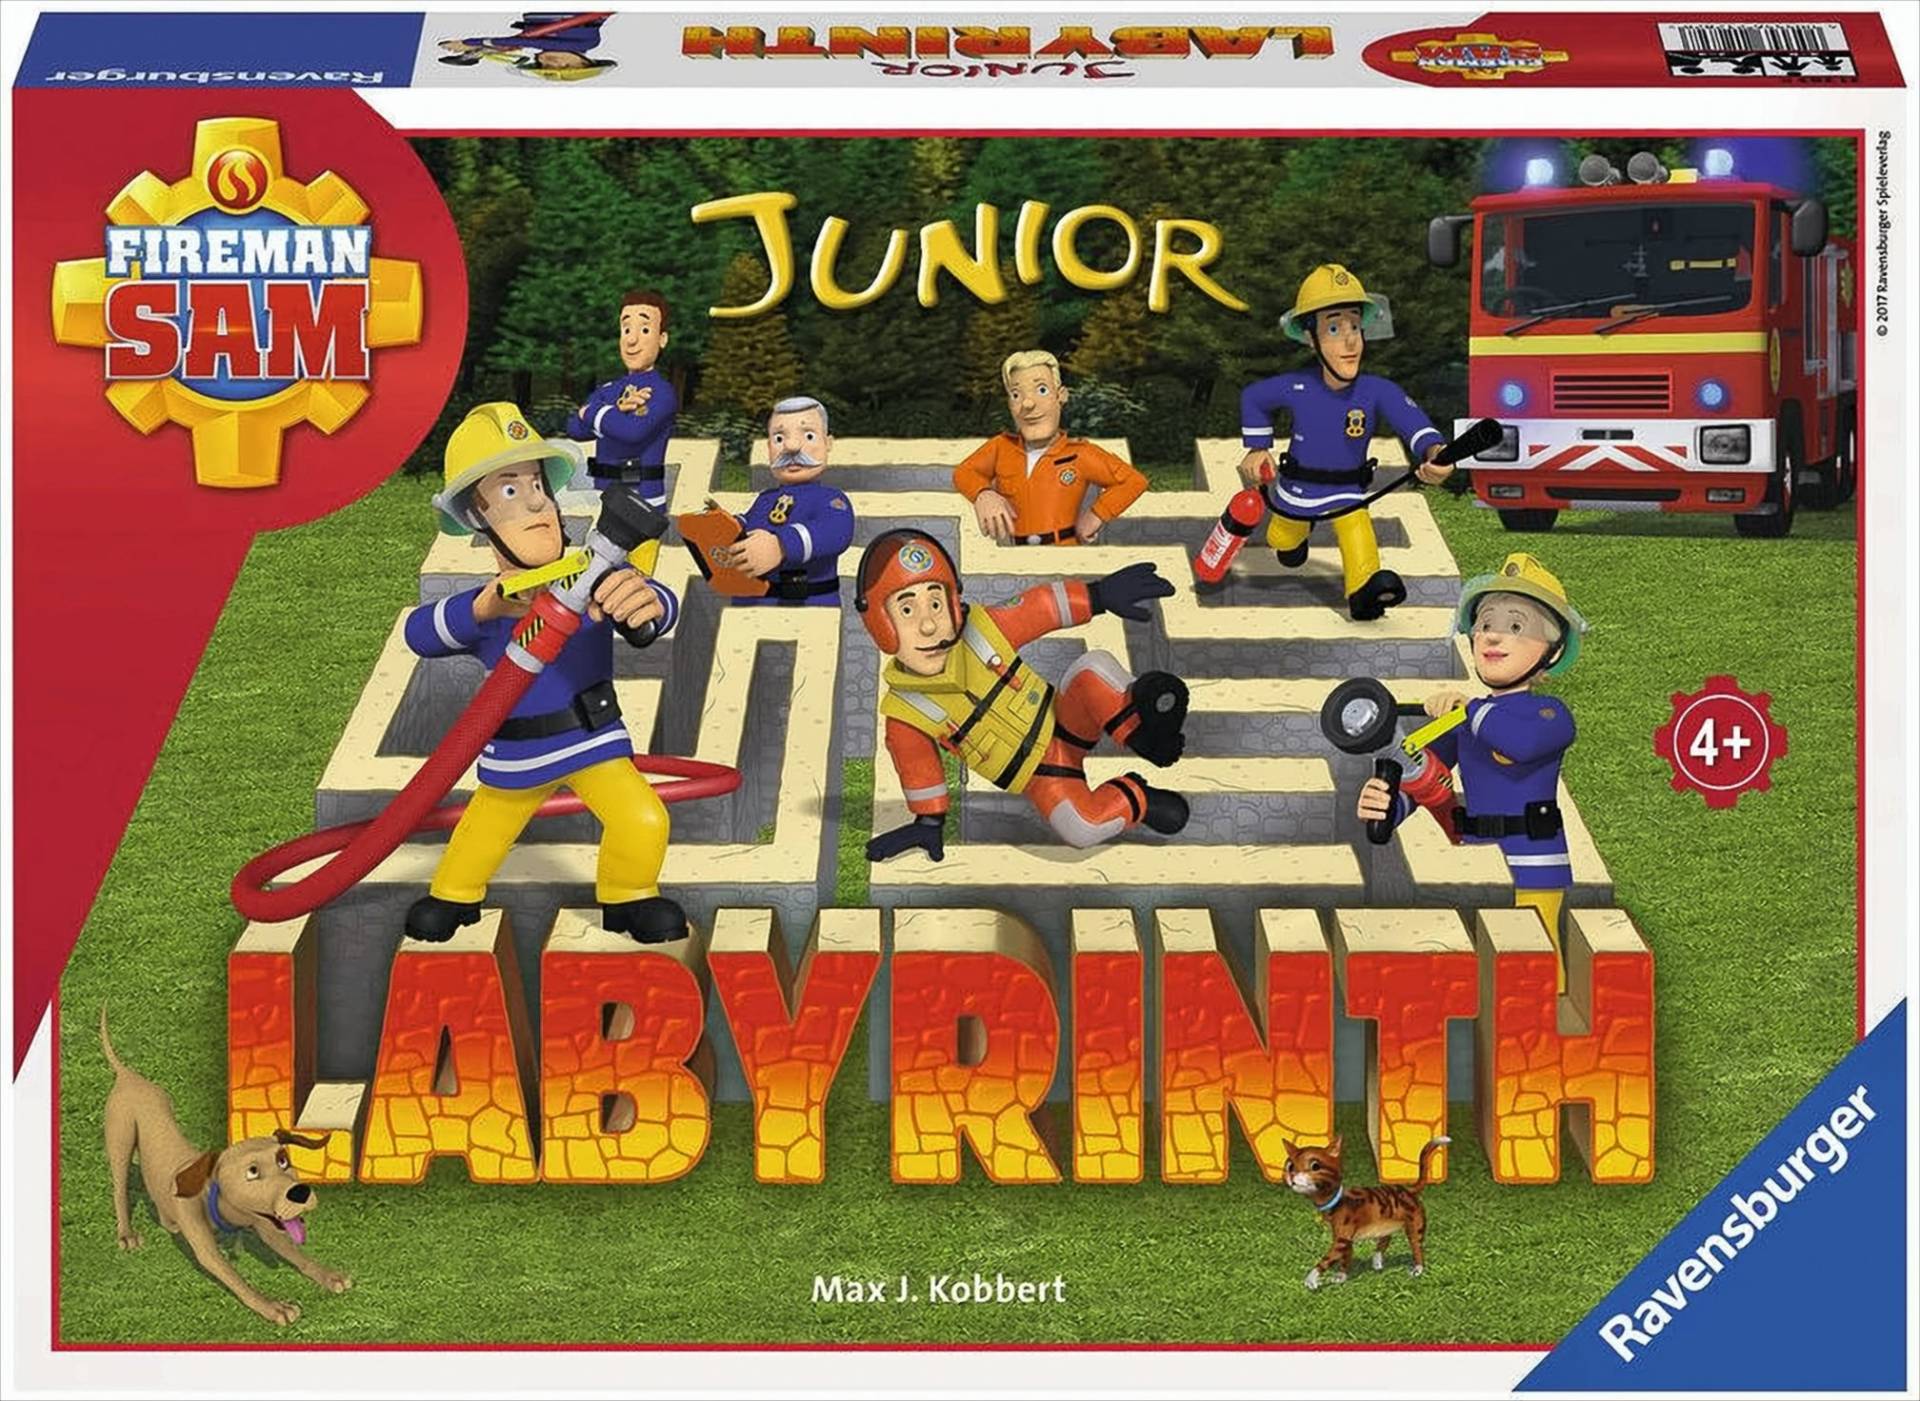 Fireman Sam Junior Labyrinth von Ravensburger Spielverlag